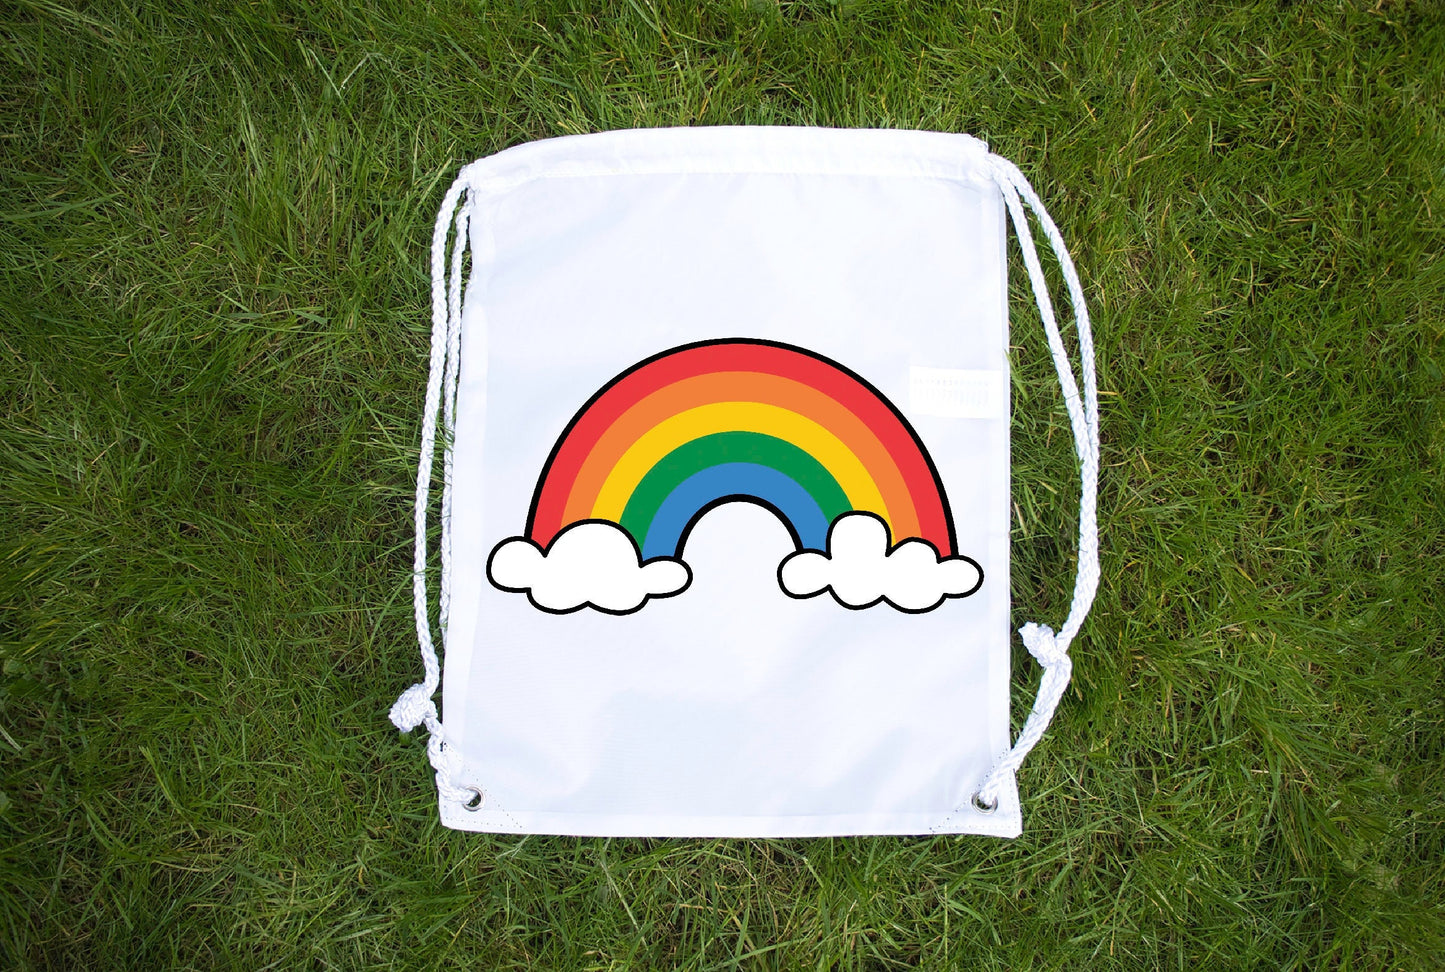 Rainbow Flag bag (ANY Pride Flag) - Draw String Bag - LGBT Lesbian Gay Bi Transgender - Festival Merch